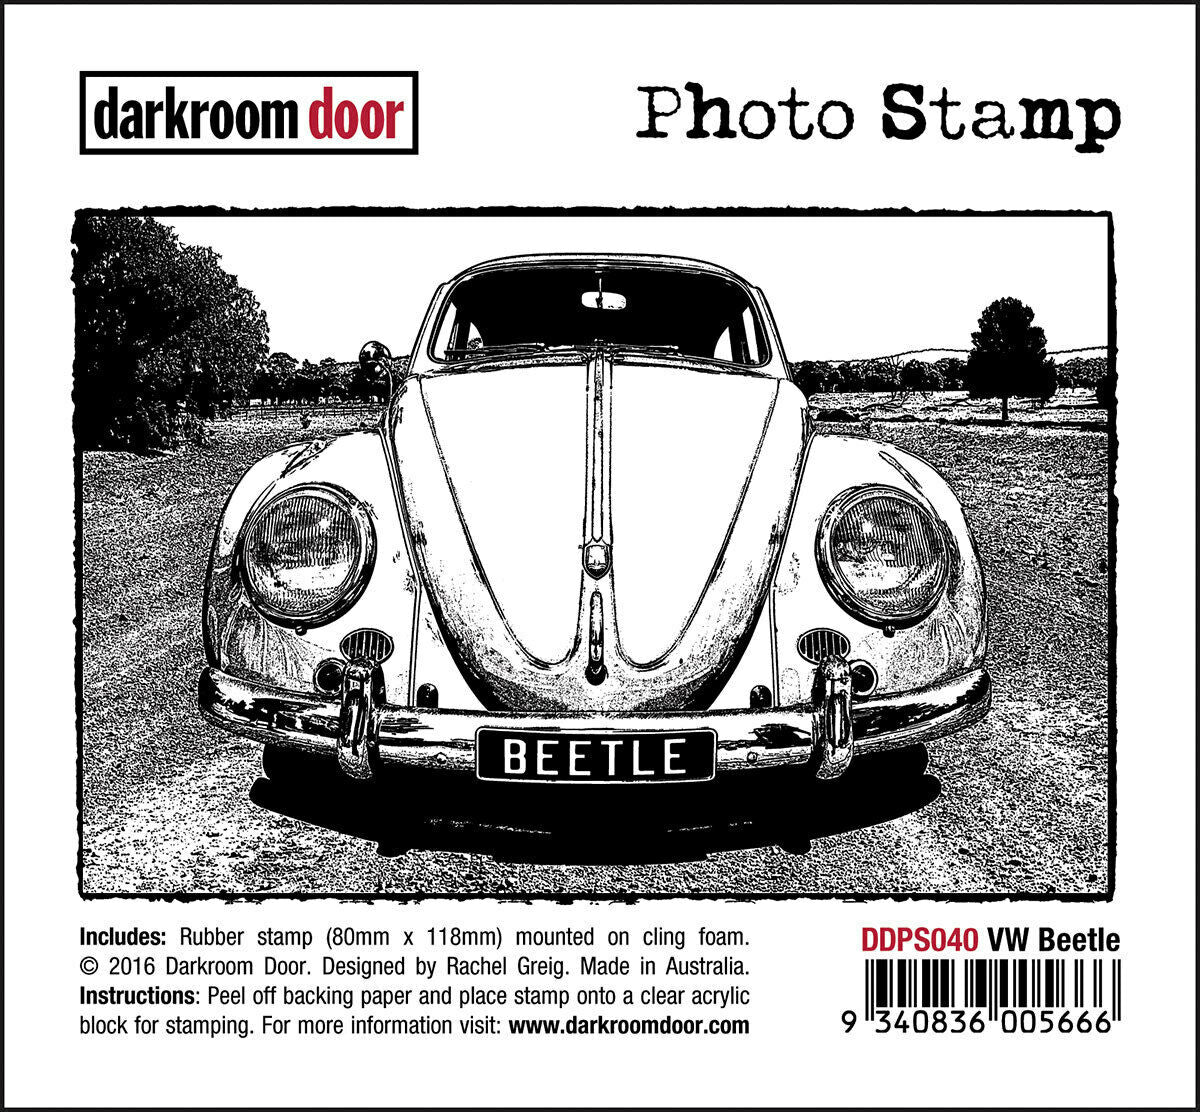 Darkroom Door Photo Rubber Stamp VW Beetle - 118mm x 80mm